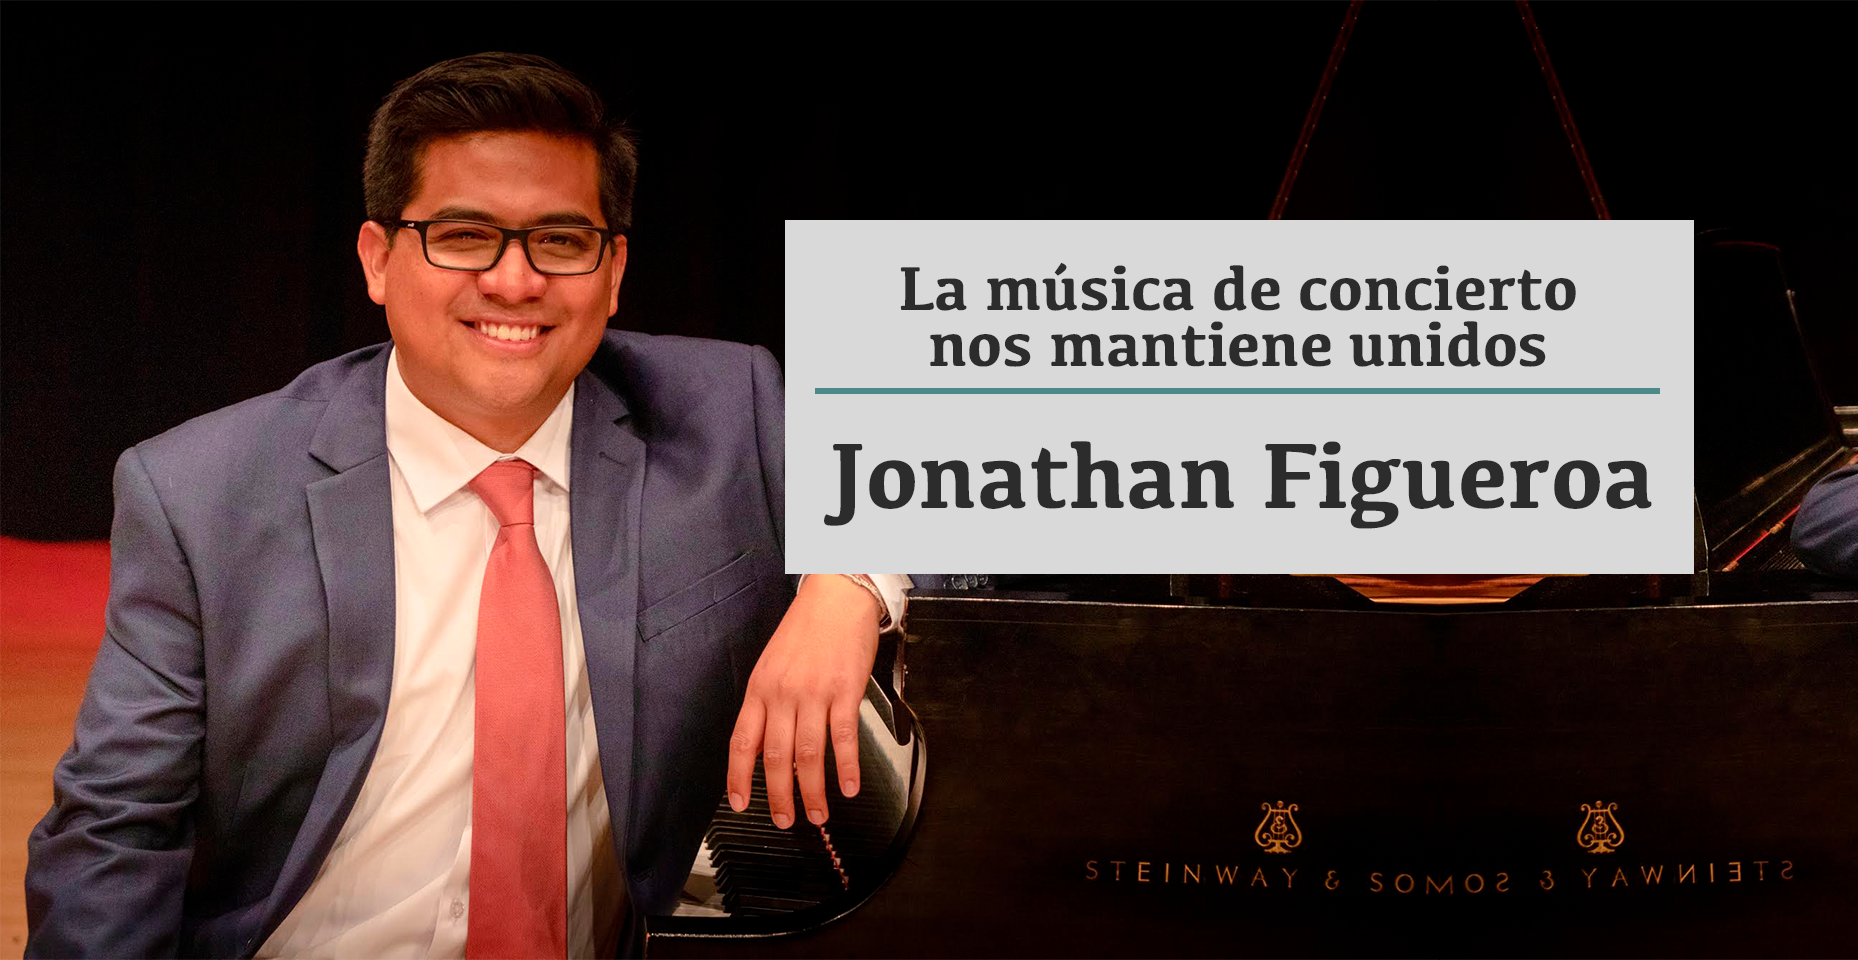 Jonathan Figueroa